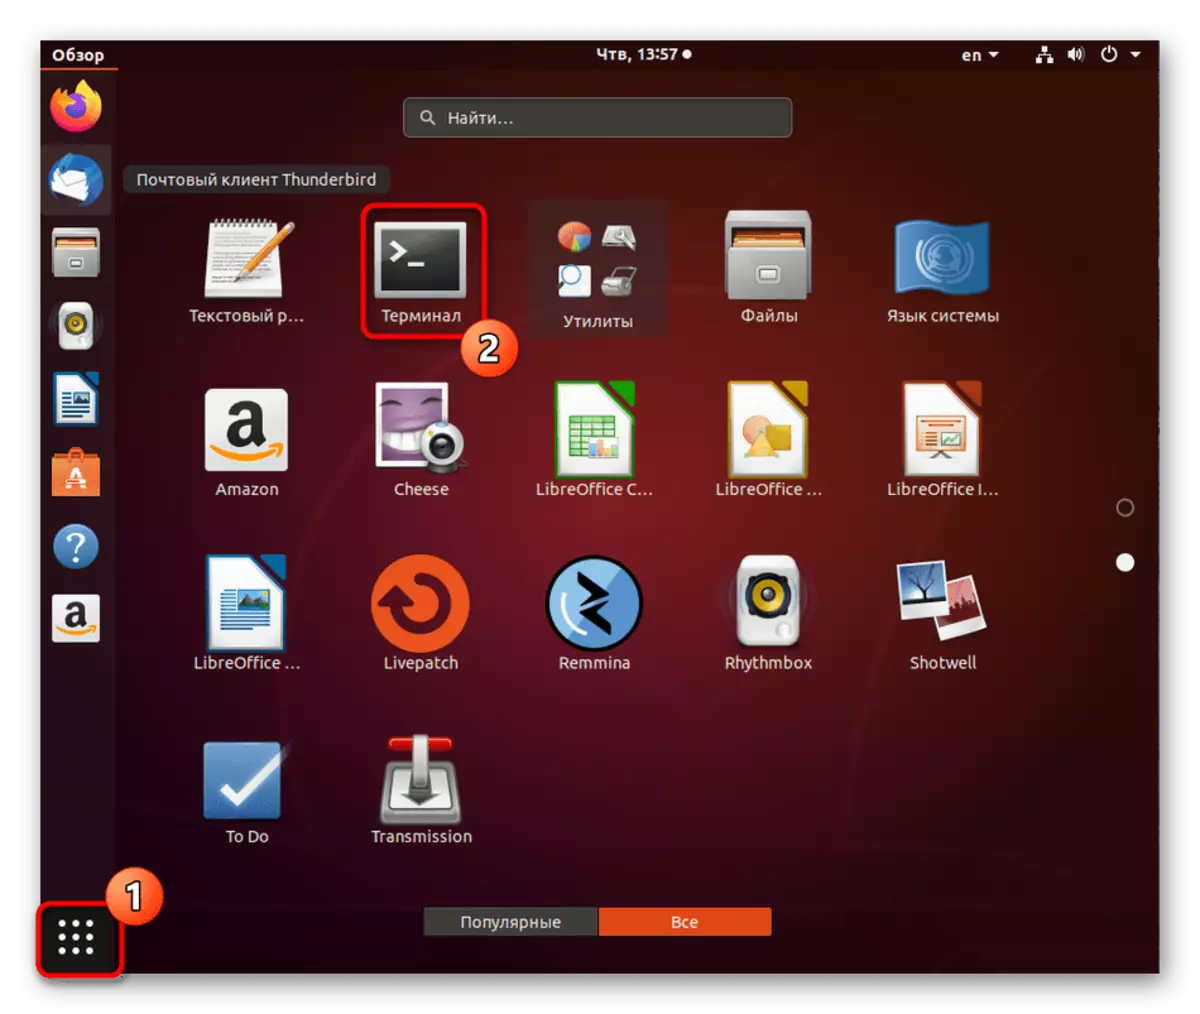 Shkoni në terminal për të hequr versionin e vjetër të ndërmarrjes node.js në Ubuntu